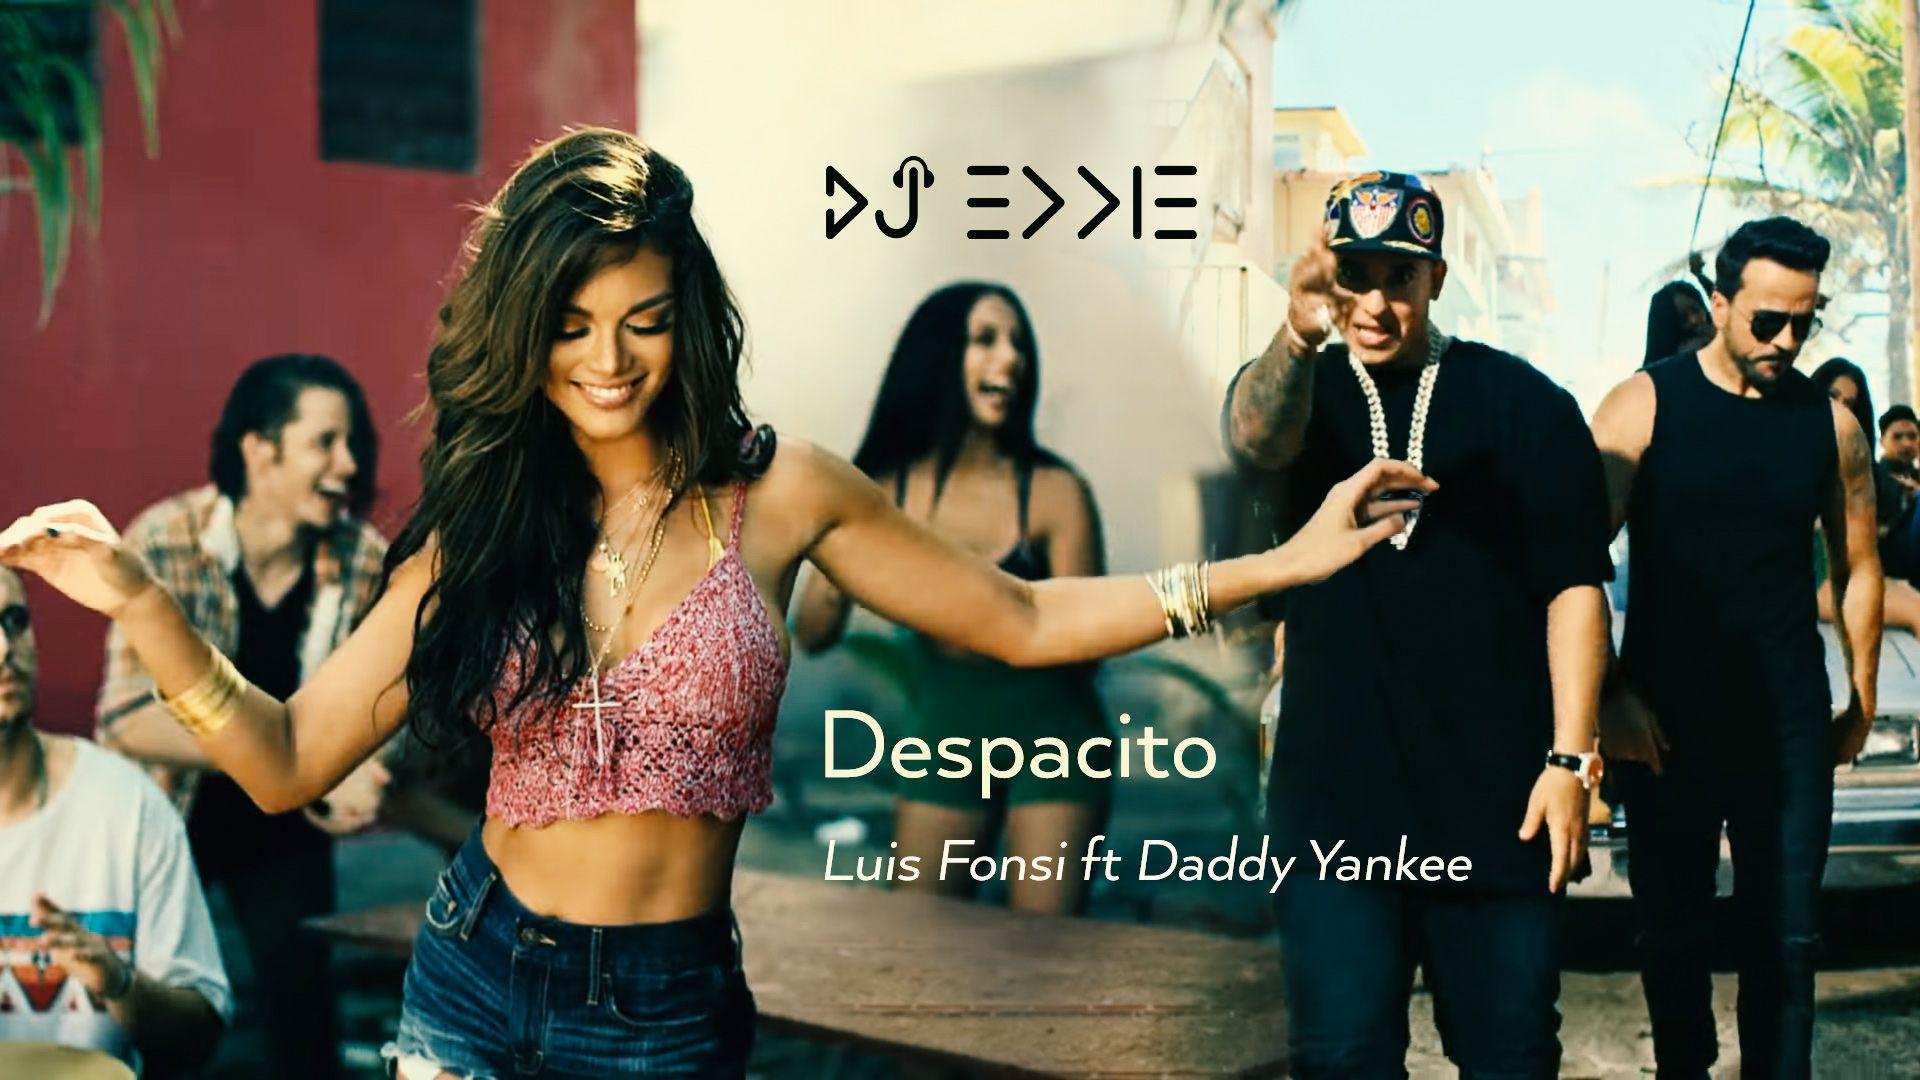 Luis Fonsi ft Daddy Yankee